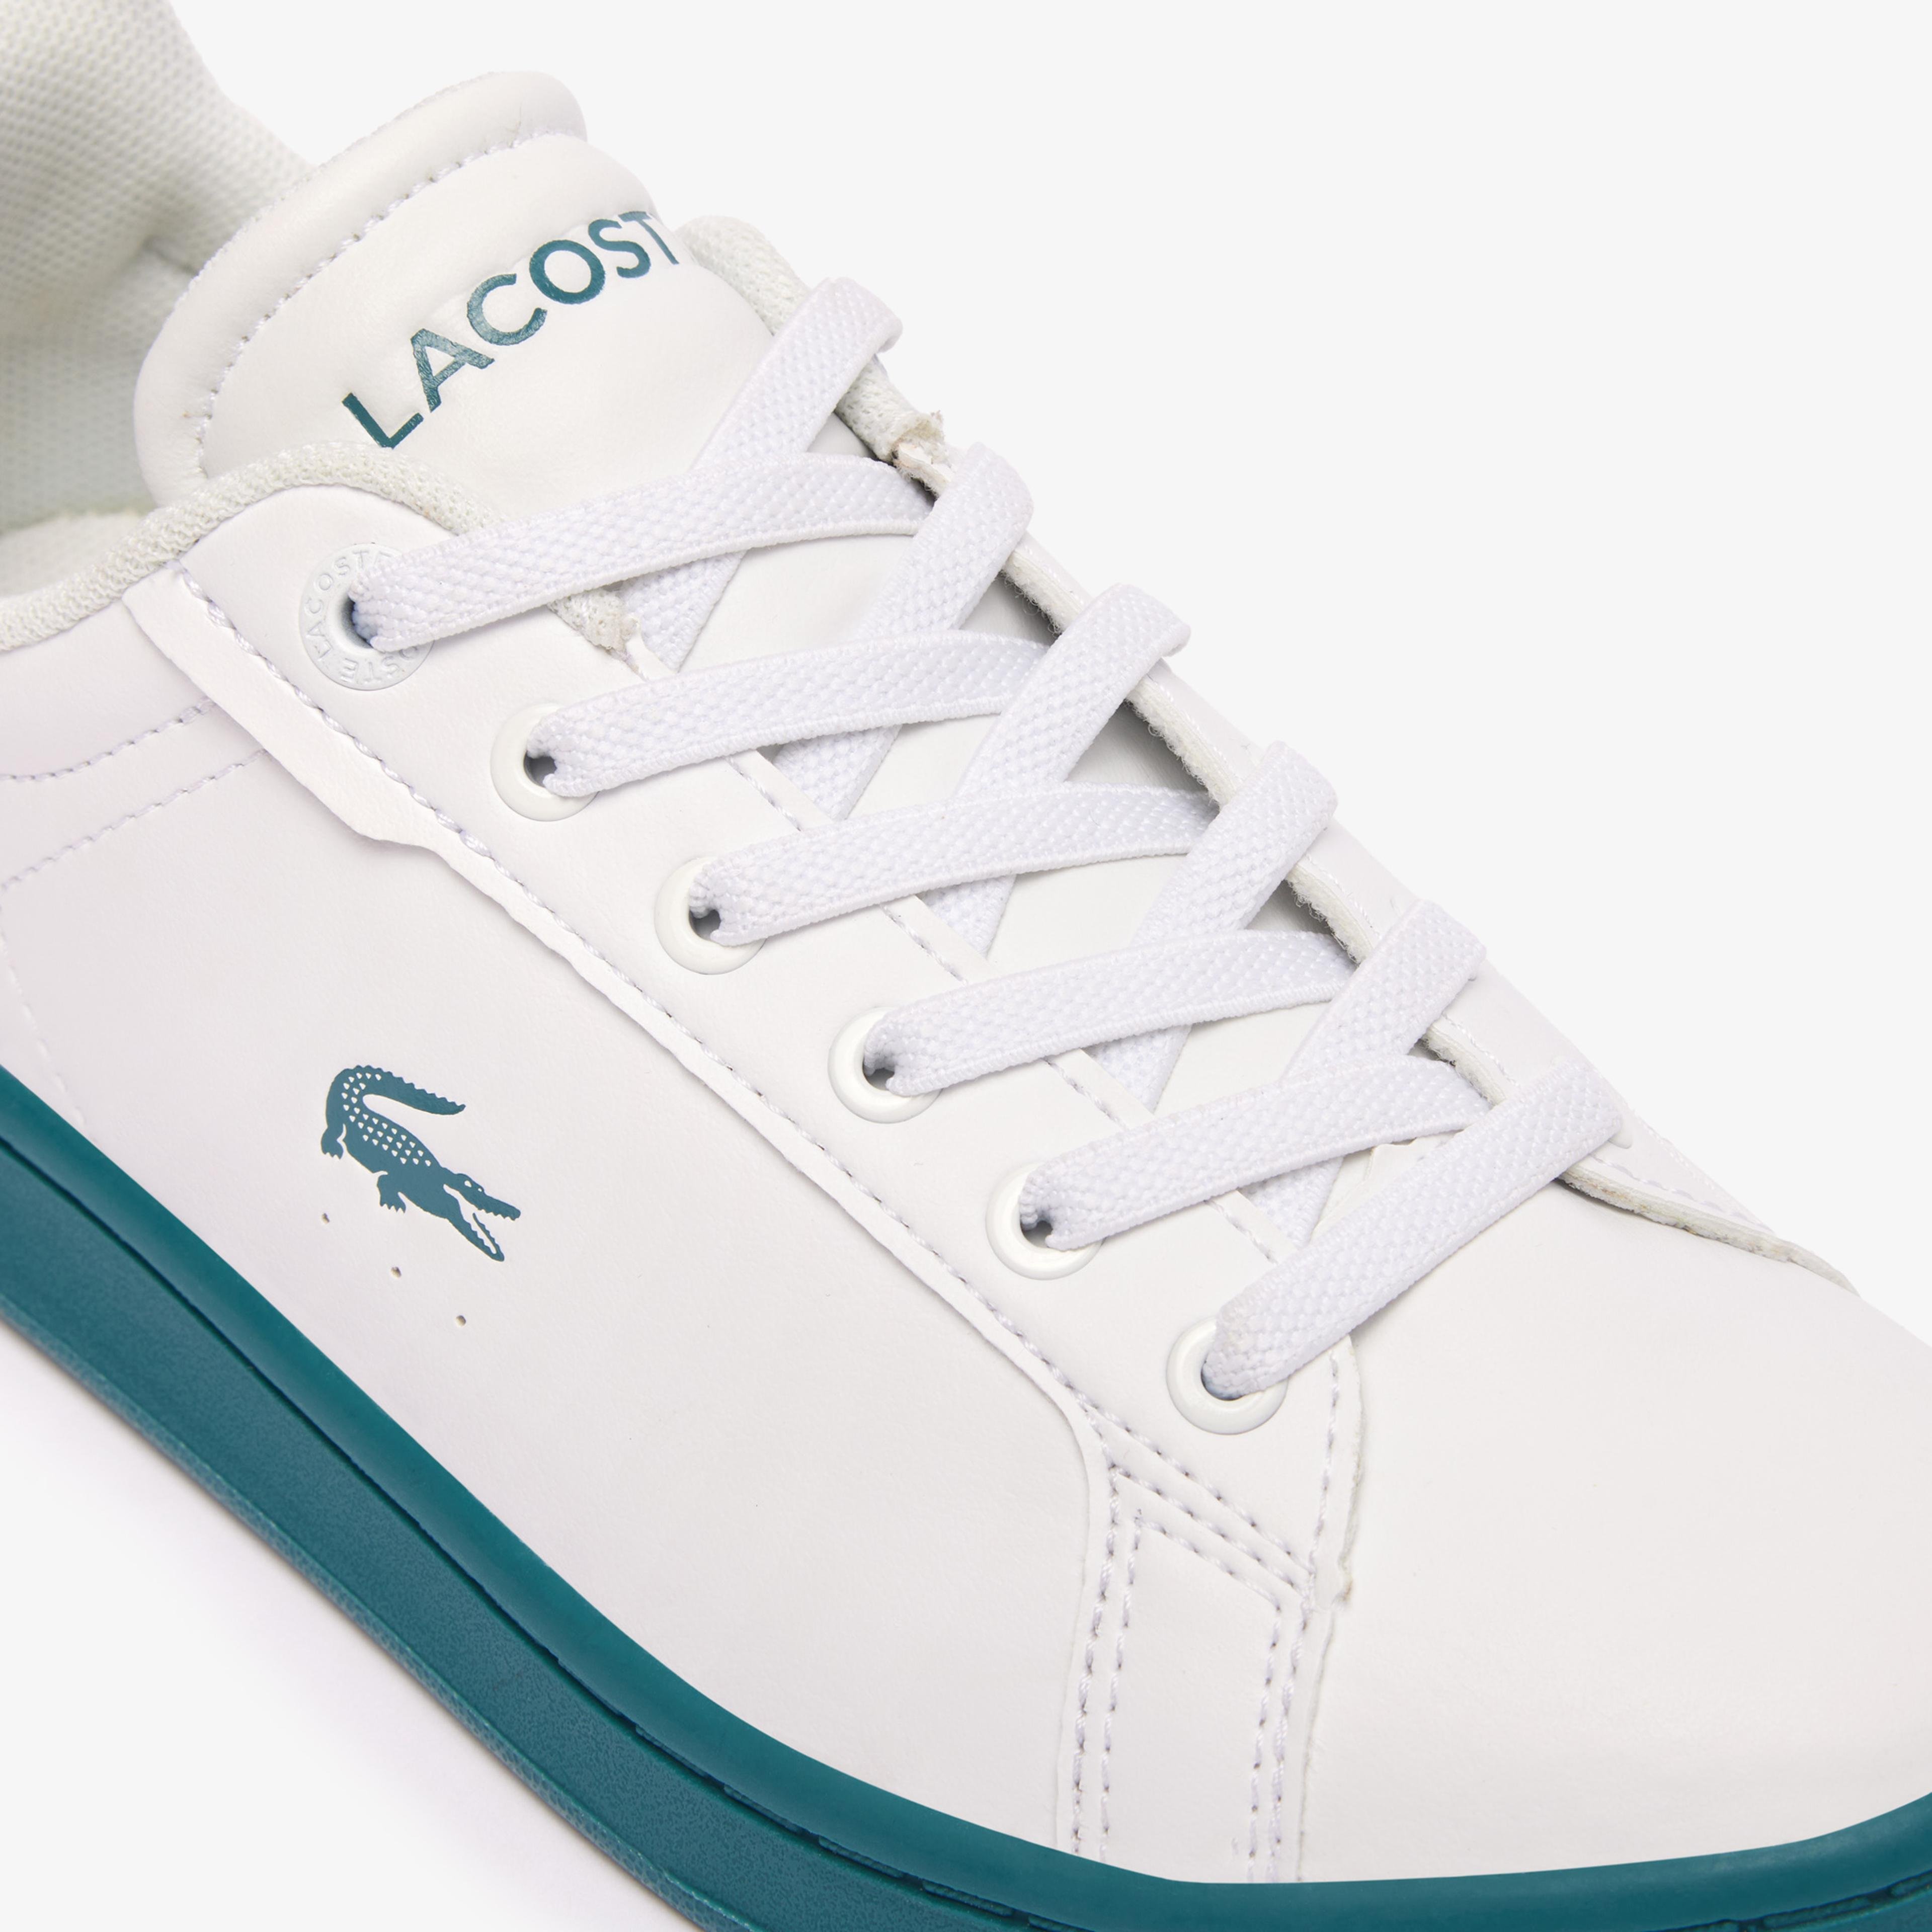 Lacoste Carnaby Pro Synthetic Fiber Çocuk Beyaz Sneaker